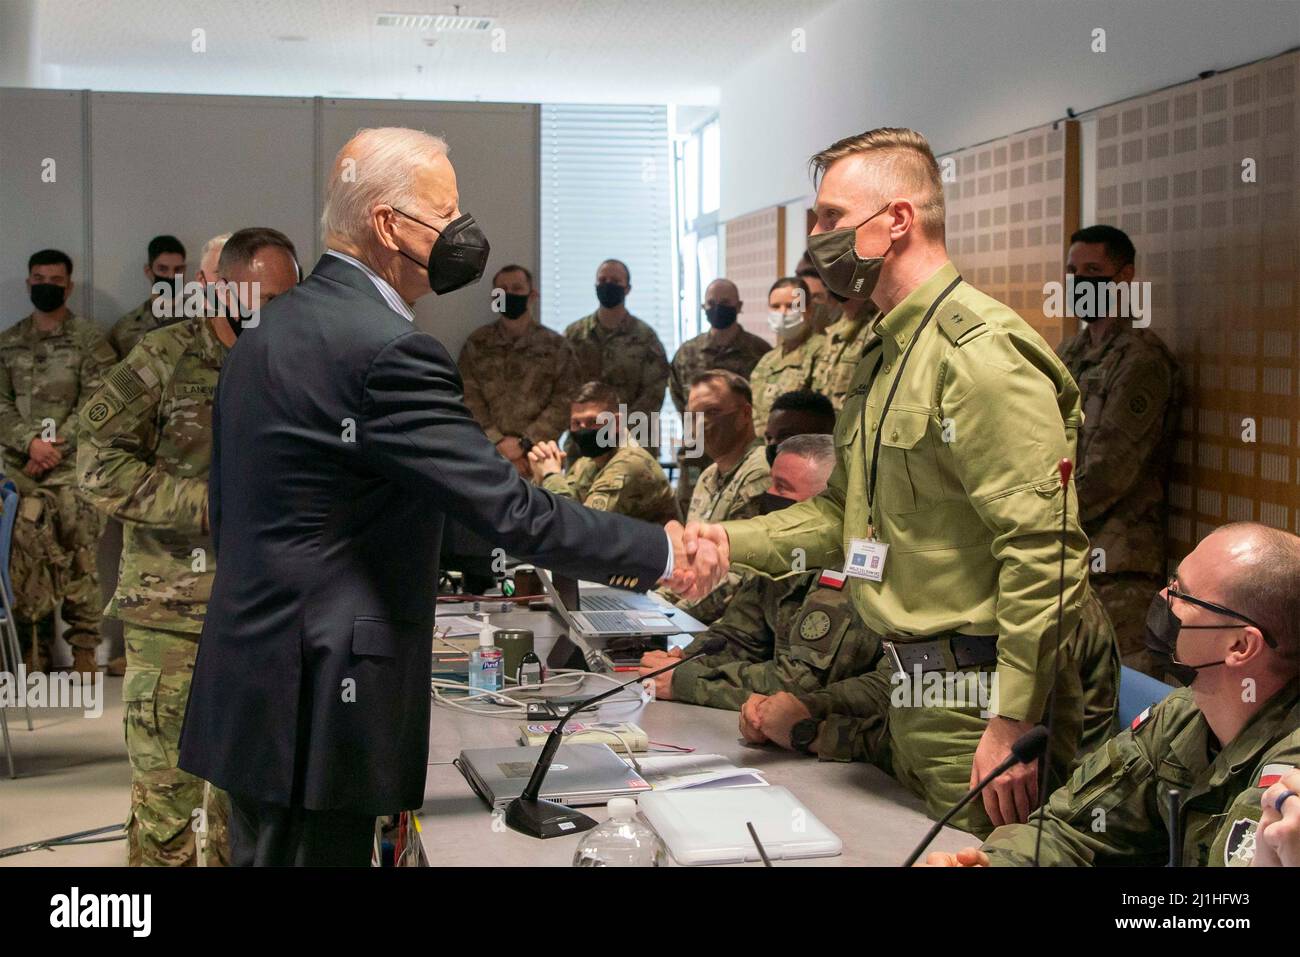 Jasionka, Polen. 25. März 2022. Der US-Präsident Joe Biden begrüßt am 25. März 2022 in Jasionka, Polen, polnische Soldaten, die zusammen mit US-Fallschirmjägern auf einer NATO-Basis arbeiten. Kredit: Sgt. Claudia Nix/USA Army/Alamy Live News Stockfoto